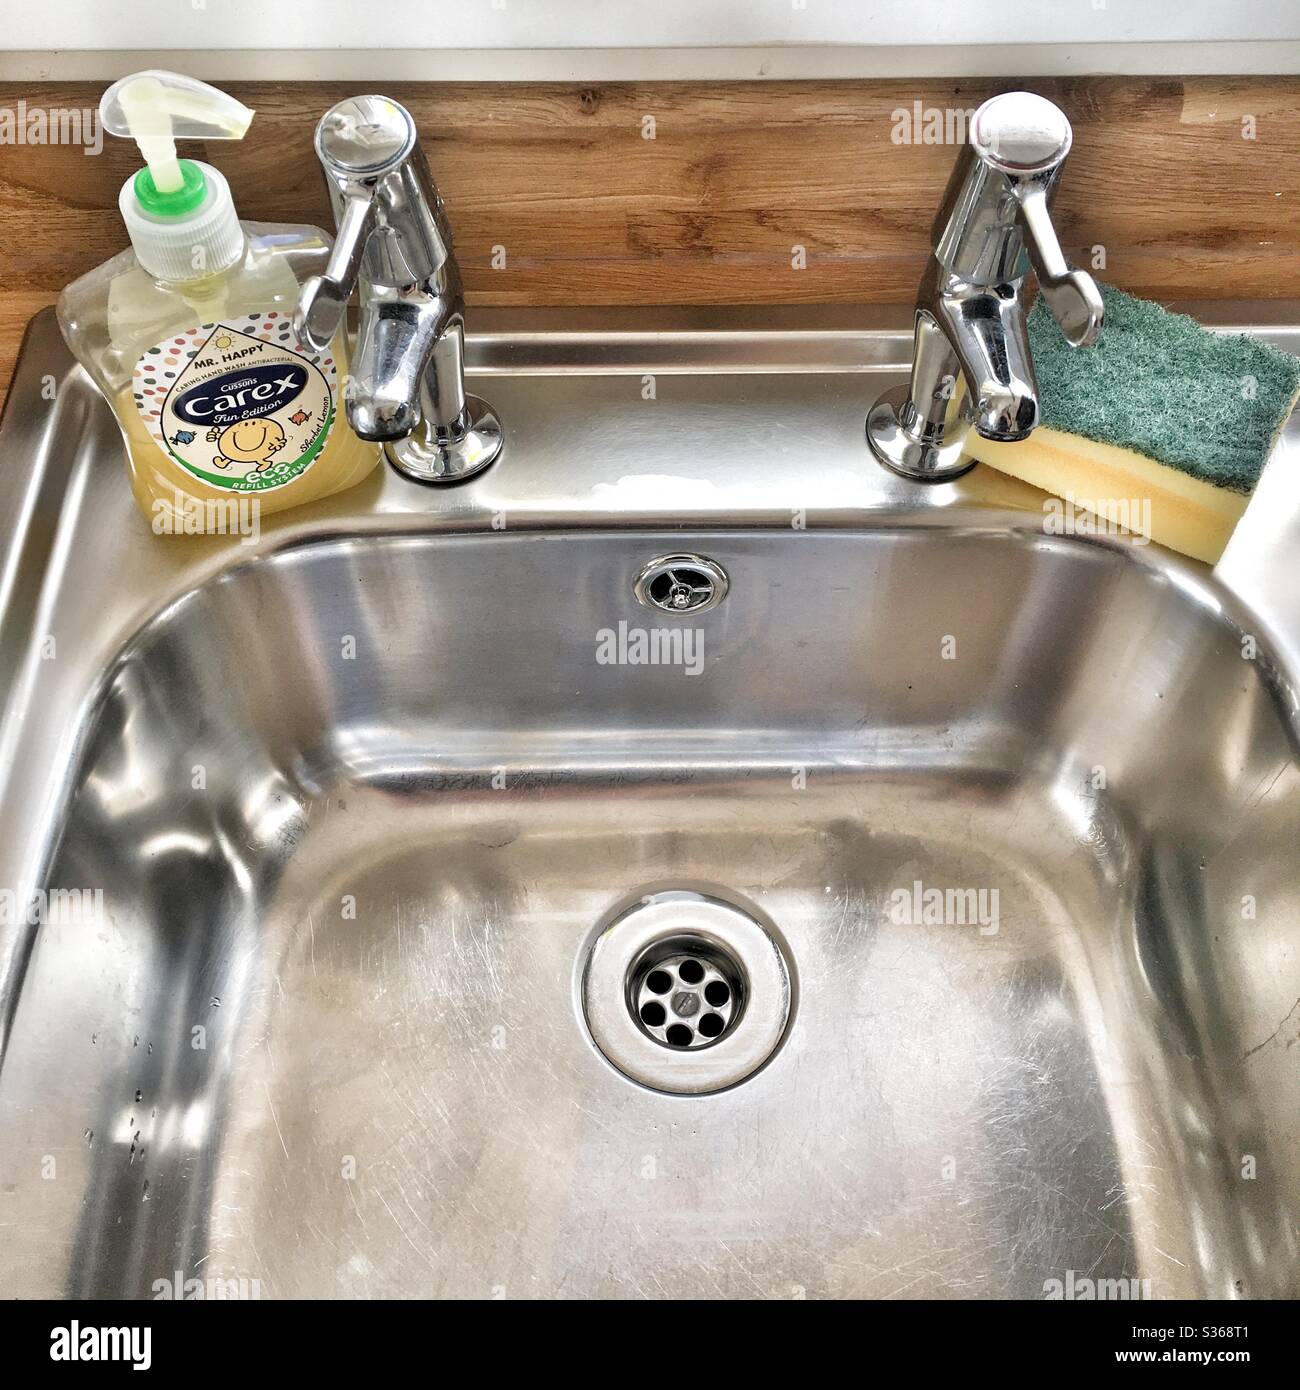 Una fotografía de un fregadero de acero inoxidable impecablemente limpio y grifos con una botella de jabón de manos Carex y una esponja. Limpieza, limpieza de casa, ocd, concepto de lavado de manos. Foto de stock